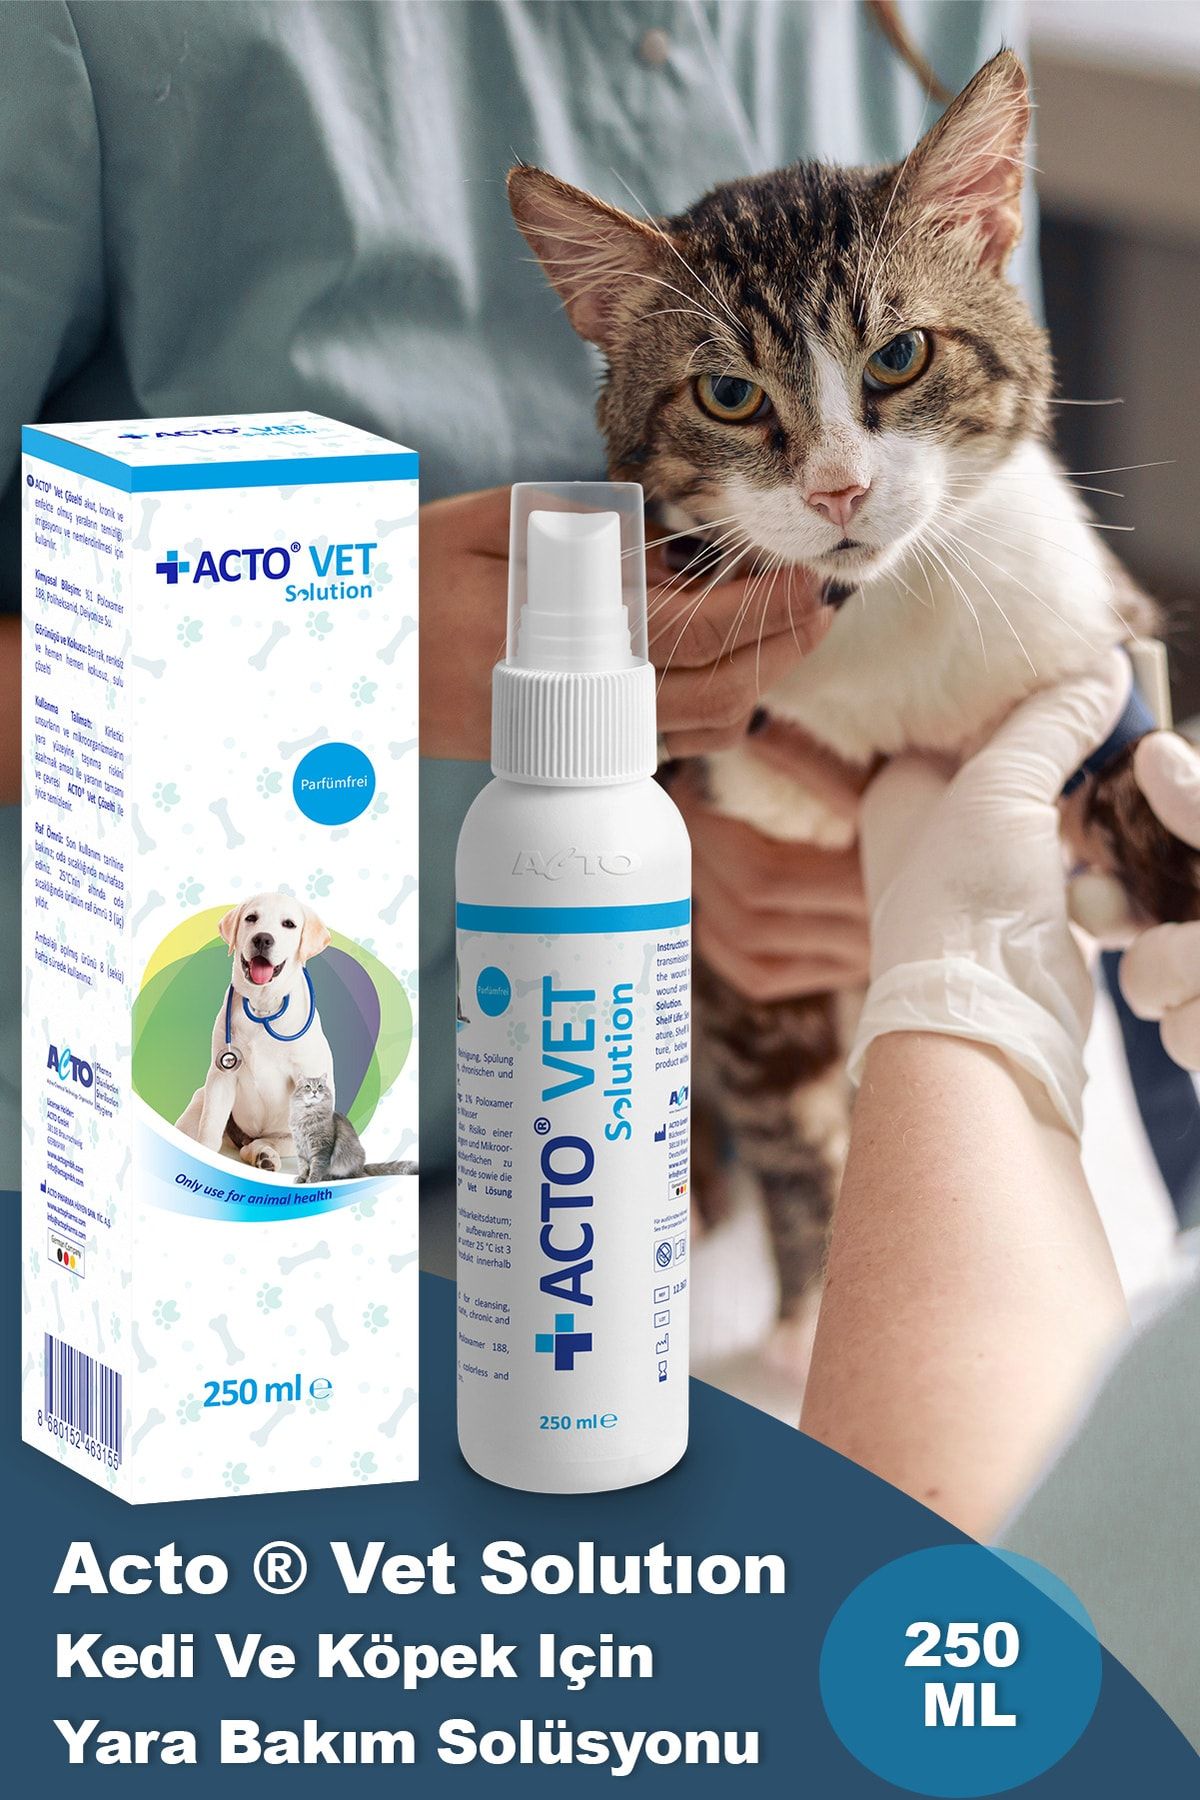 Acto ® Vet Solutıon Kedi Ve Köpek Için Yara Bakım Solüsyonu 250 Ml